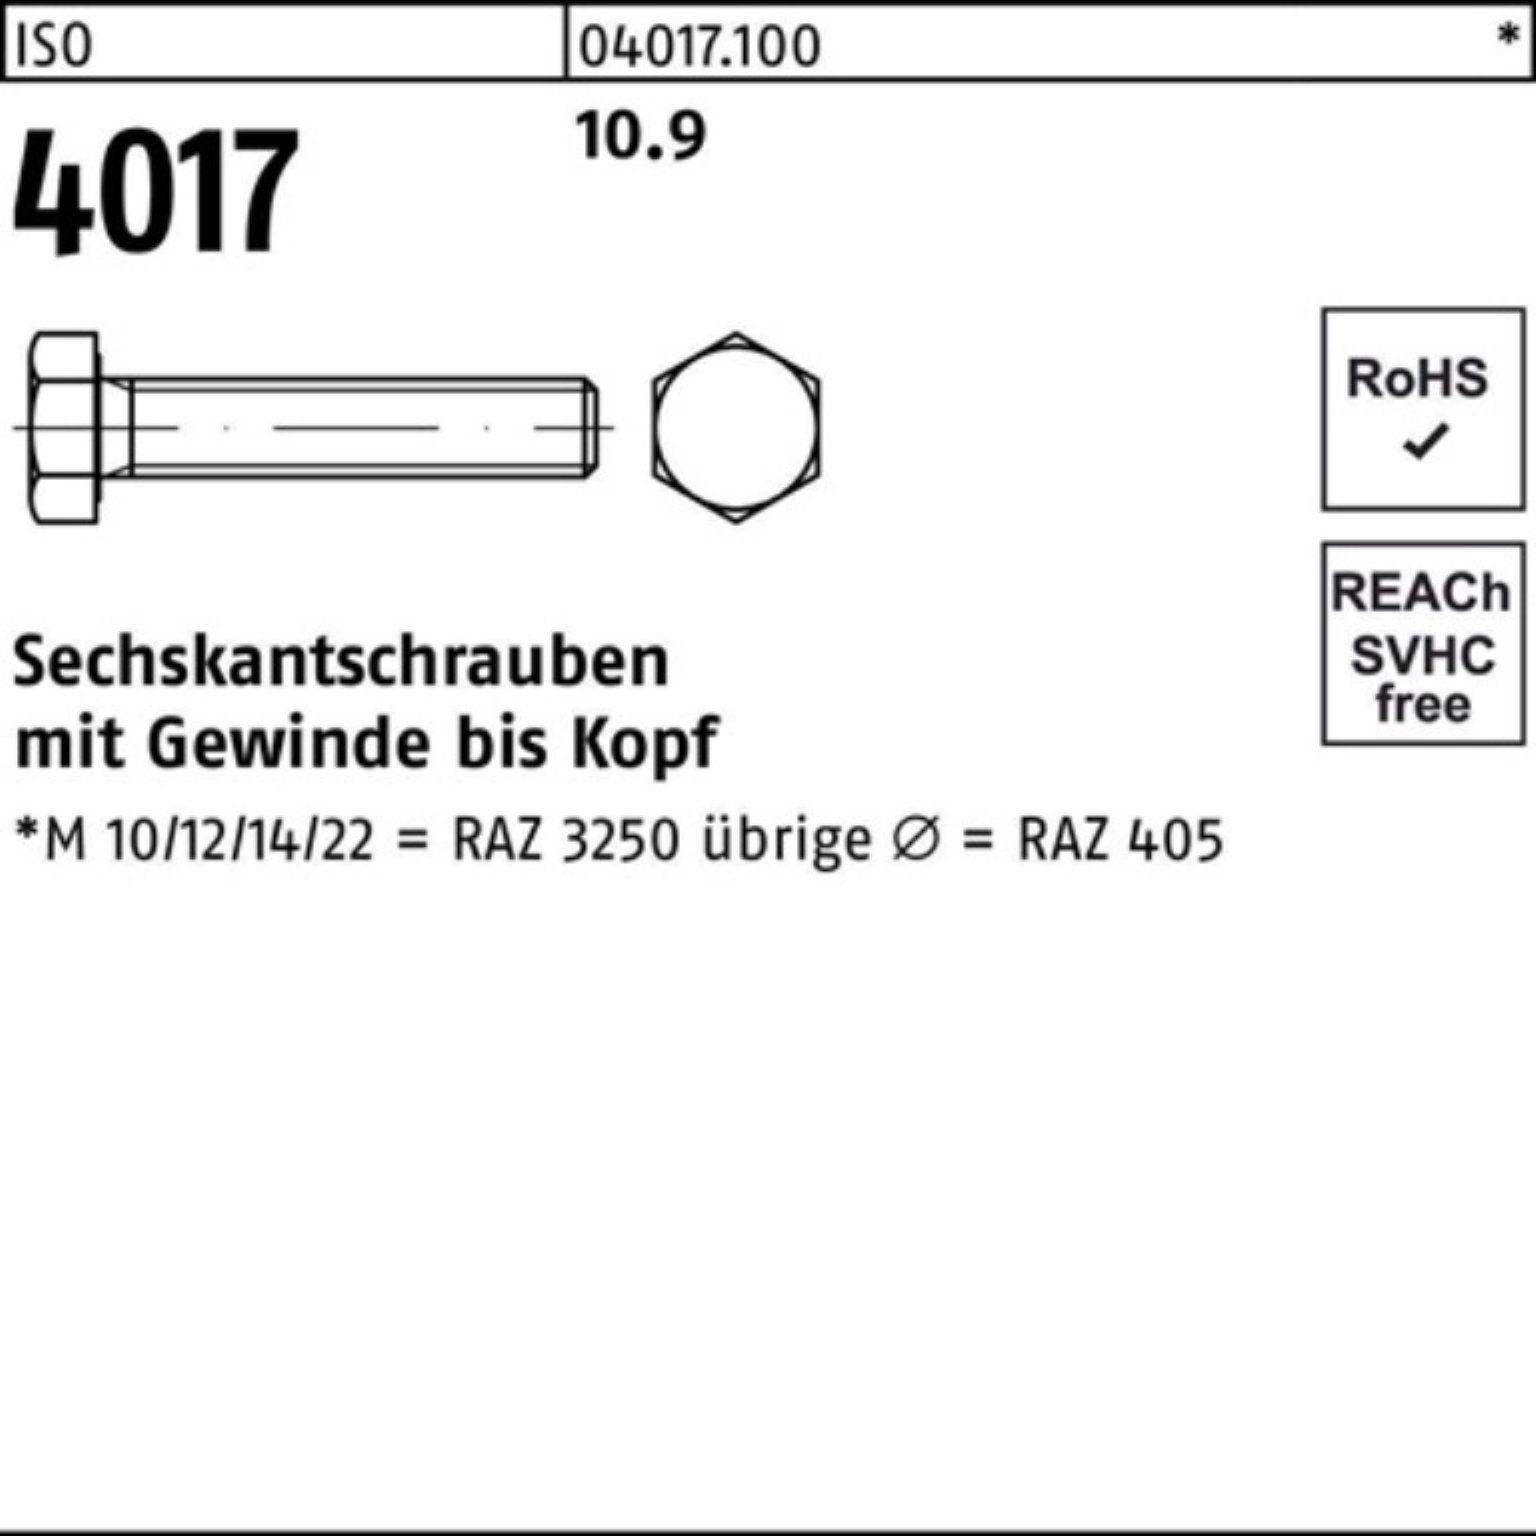 Bufab Sechskantschraube 100er Pack 4017 4 Sechskantschraube M22x 100 VG Stück ISO ISO 10 10.9